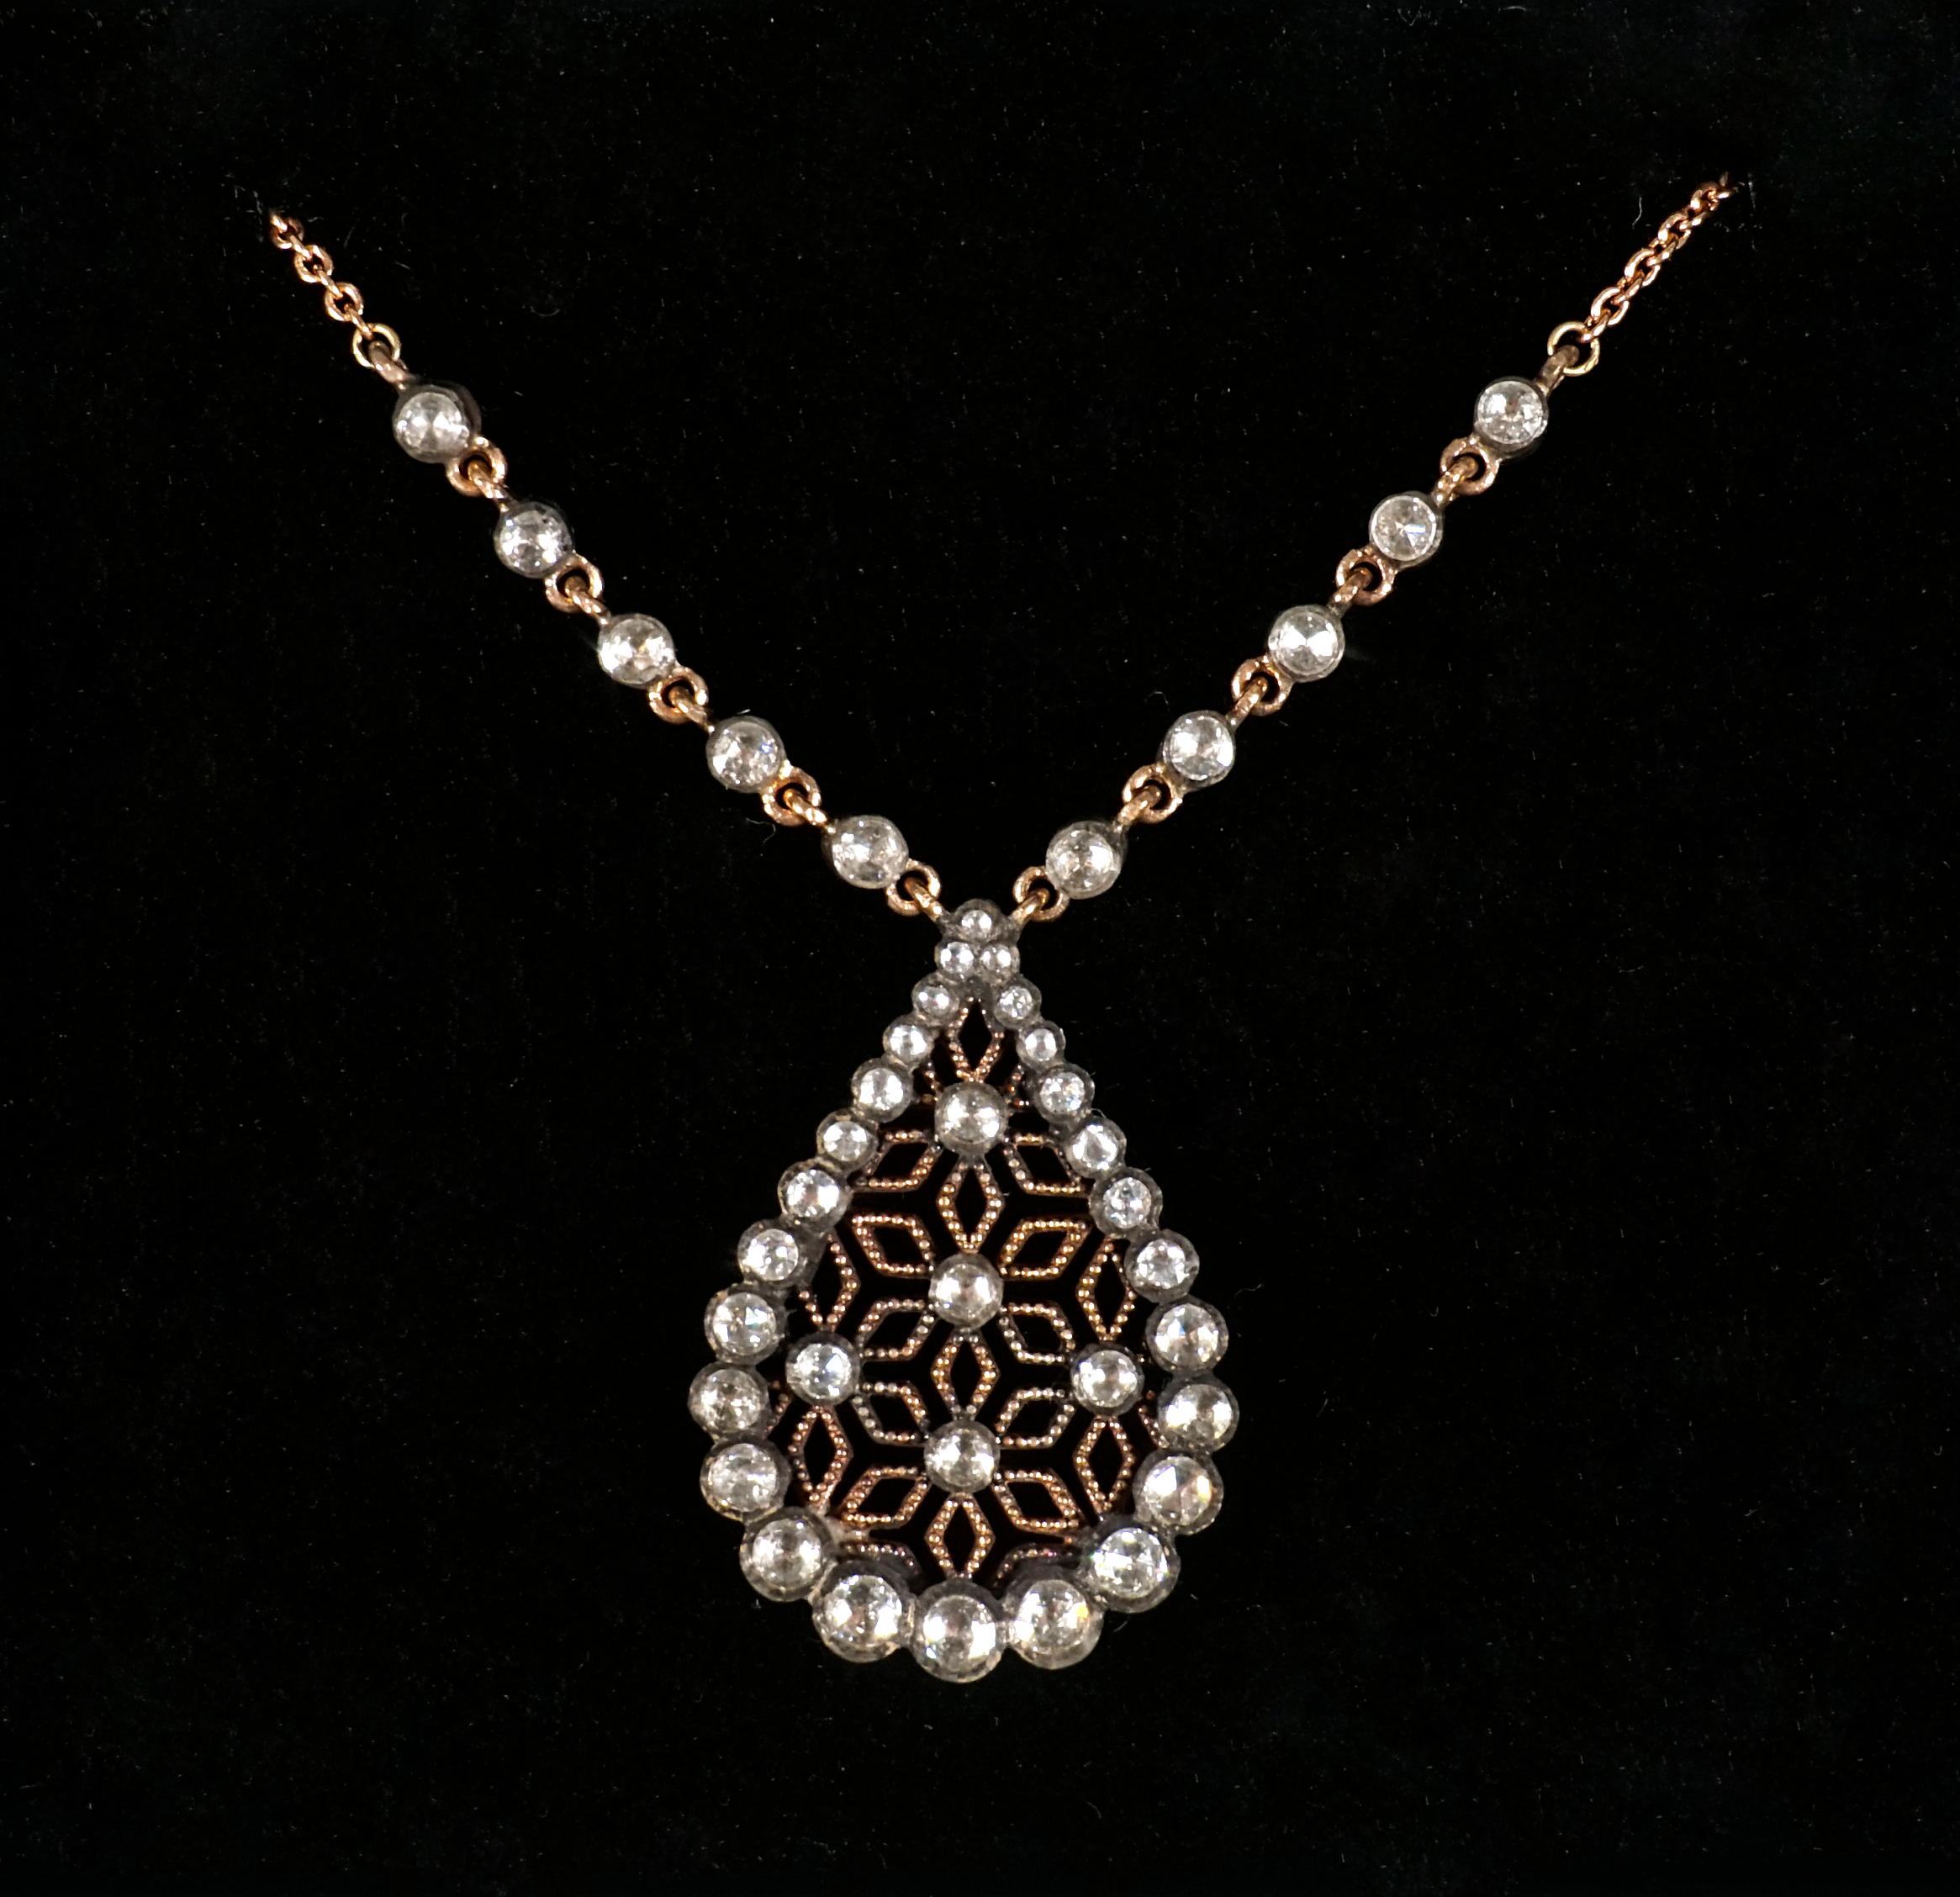 Women's Art Nouveau Necklace With Drop-shaped Pendant, Gold & Diamonds, Vienna, Ca 1900 For Sale